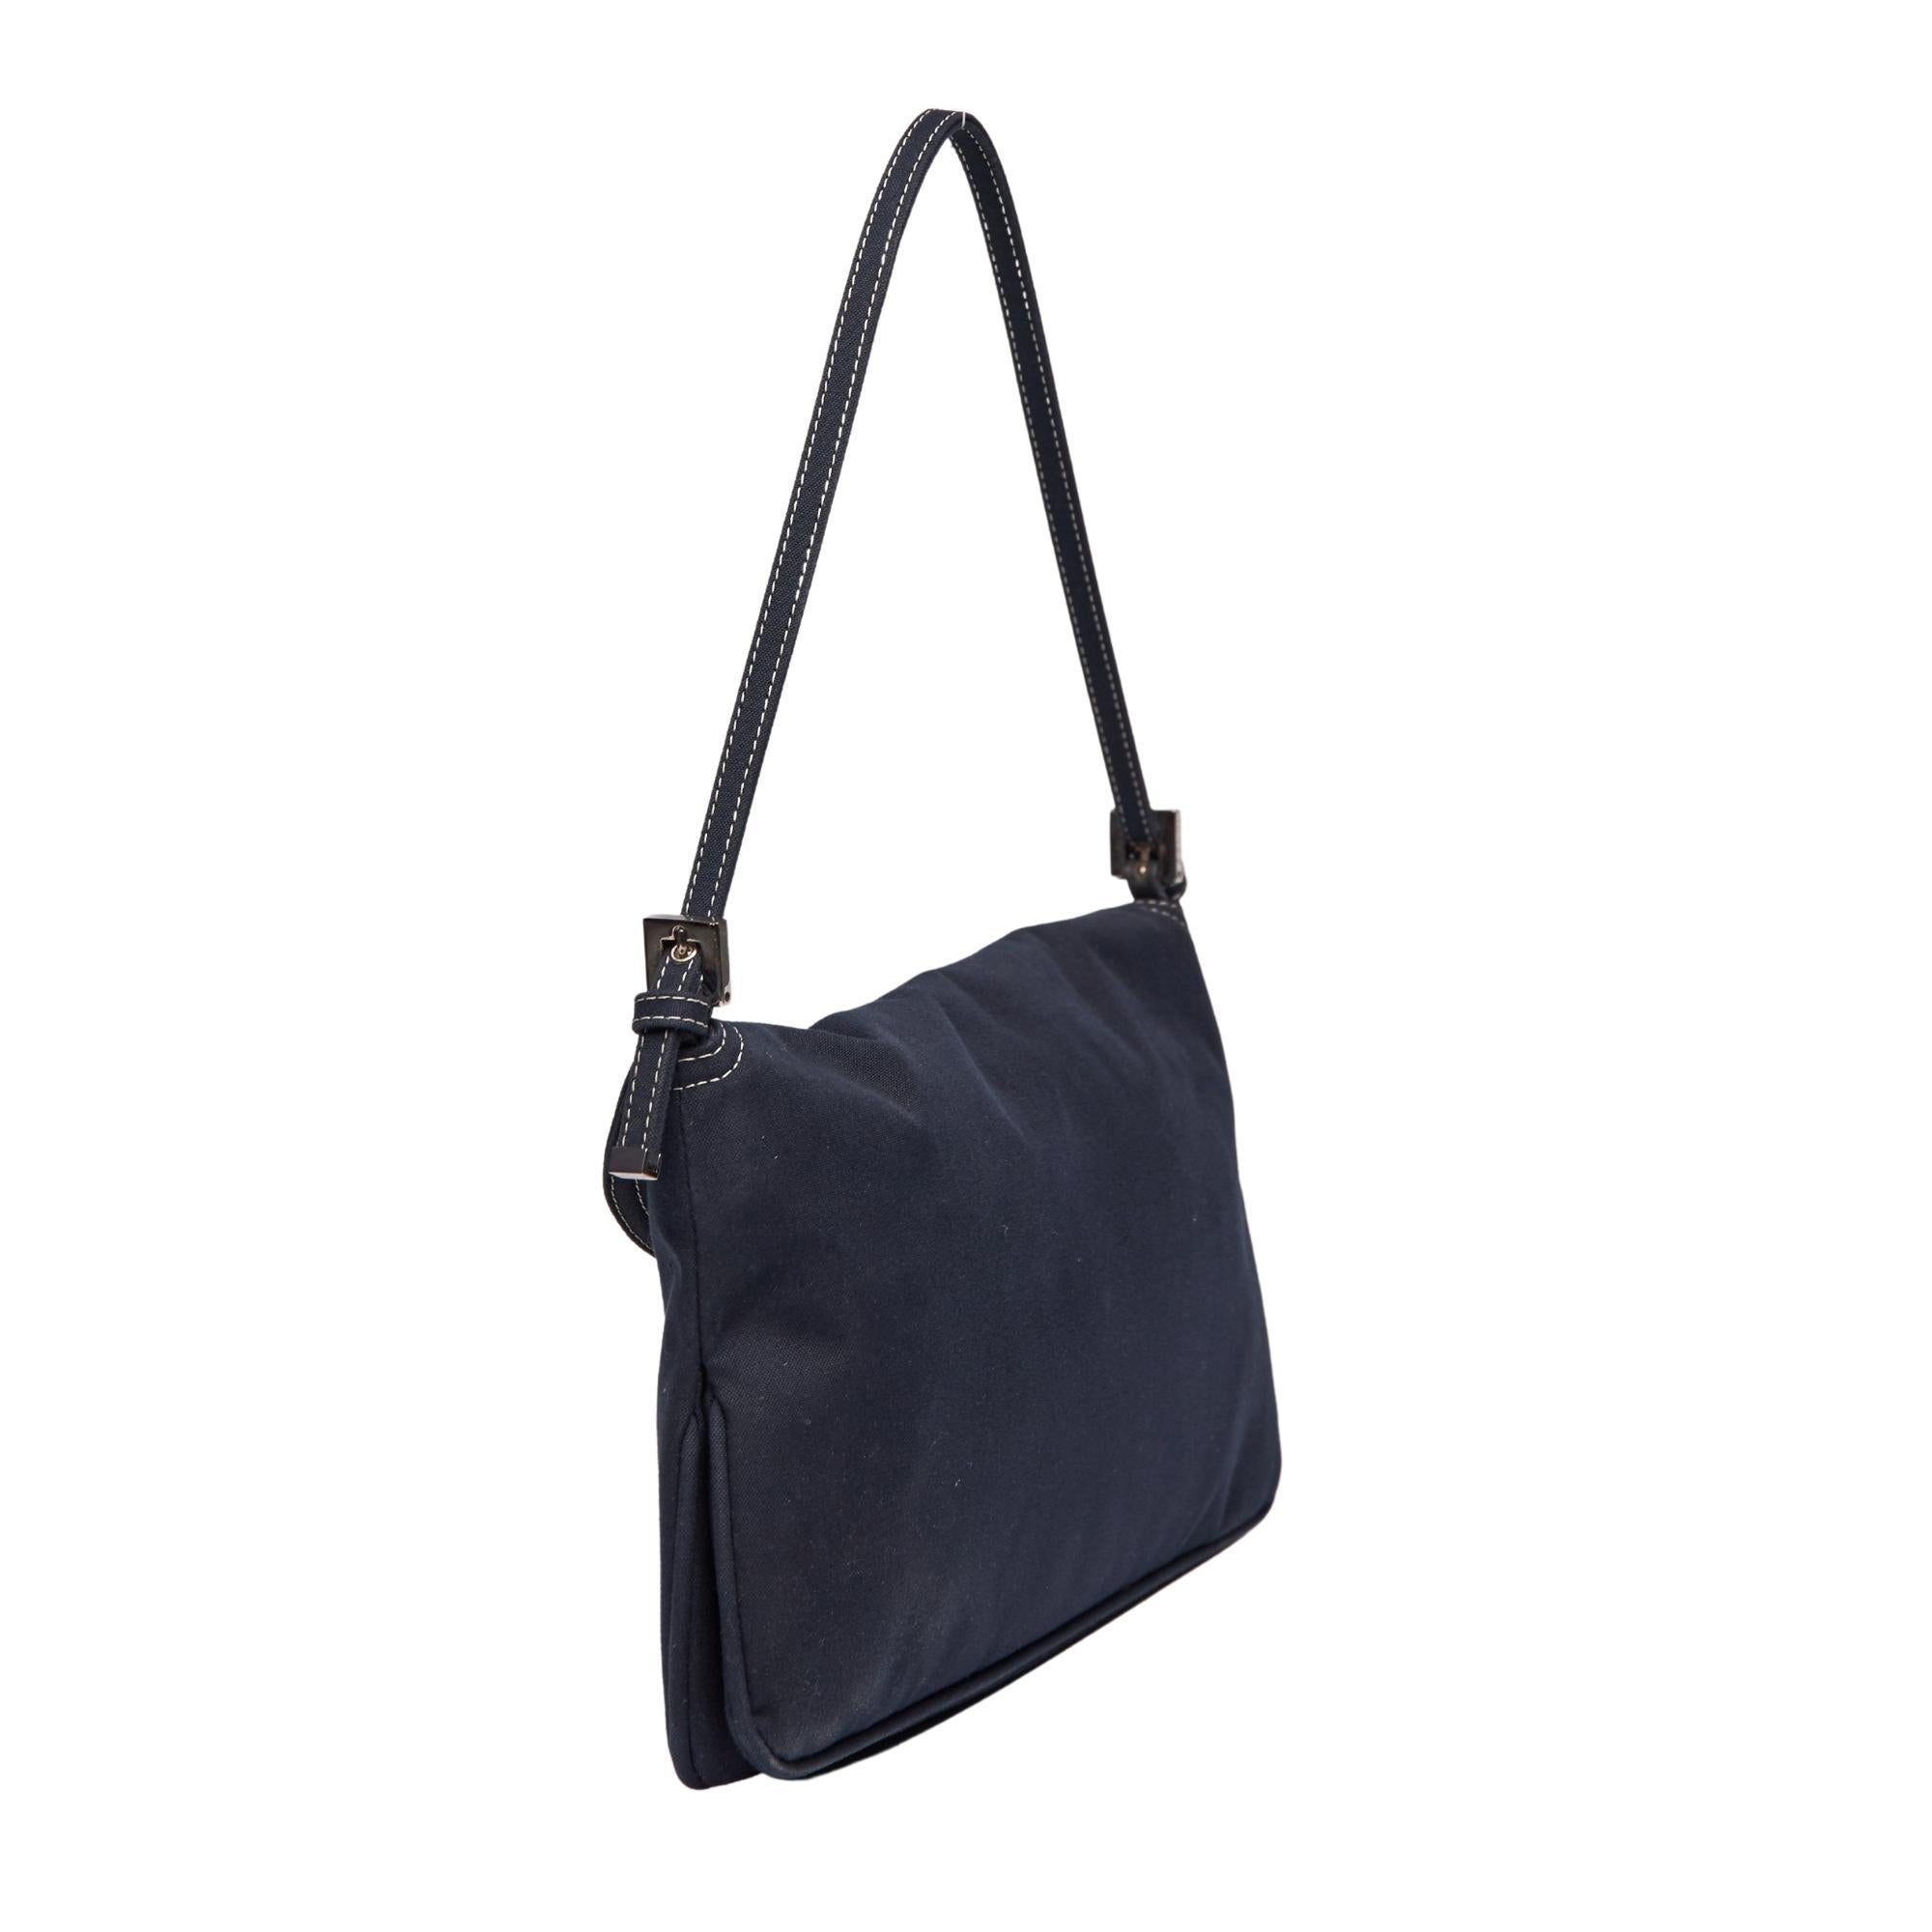 
Diese Baguette Bag von Fendi erinnert an den wieder aufkommenden Trend der 00er Jahre. Die Tasche ist aus marineblauer Baumwolle gefertigt und verfügt über eine schlanke Silhouette, silberfarbene Beschläge, weiße Kontrastnähte, einen flachen